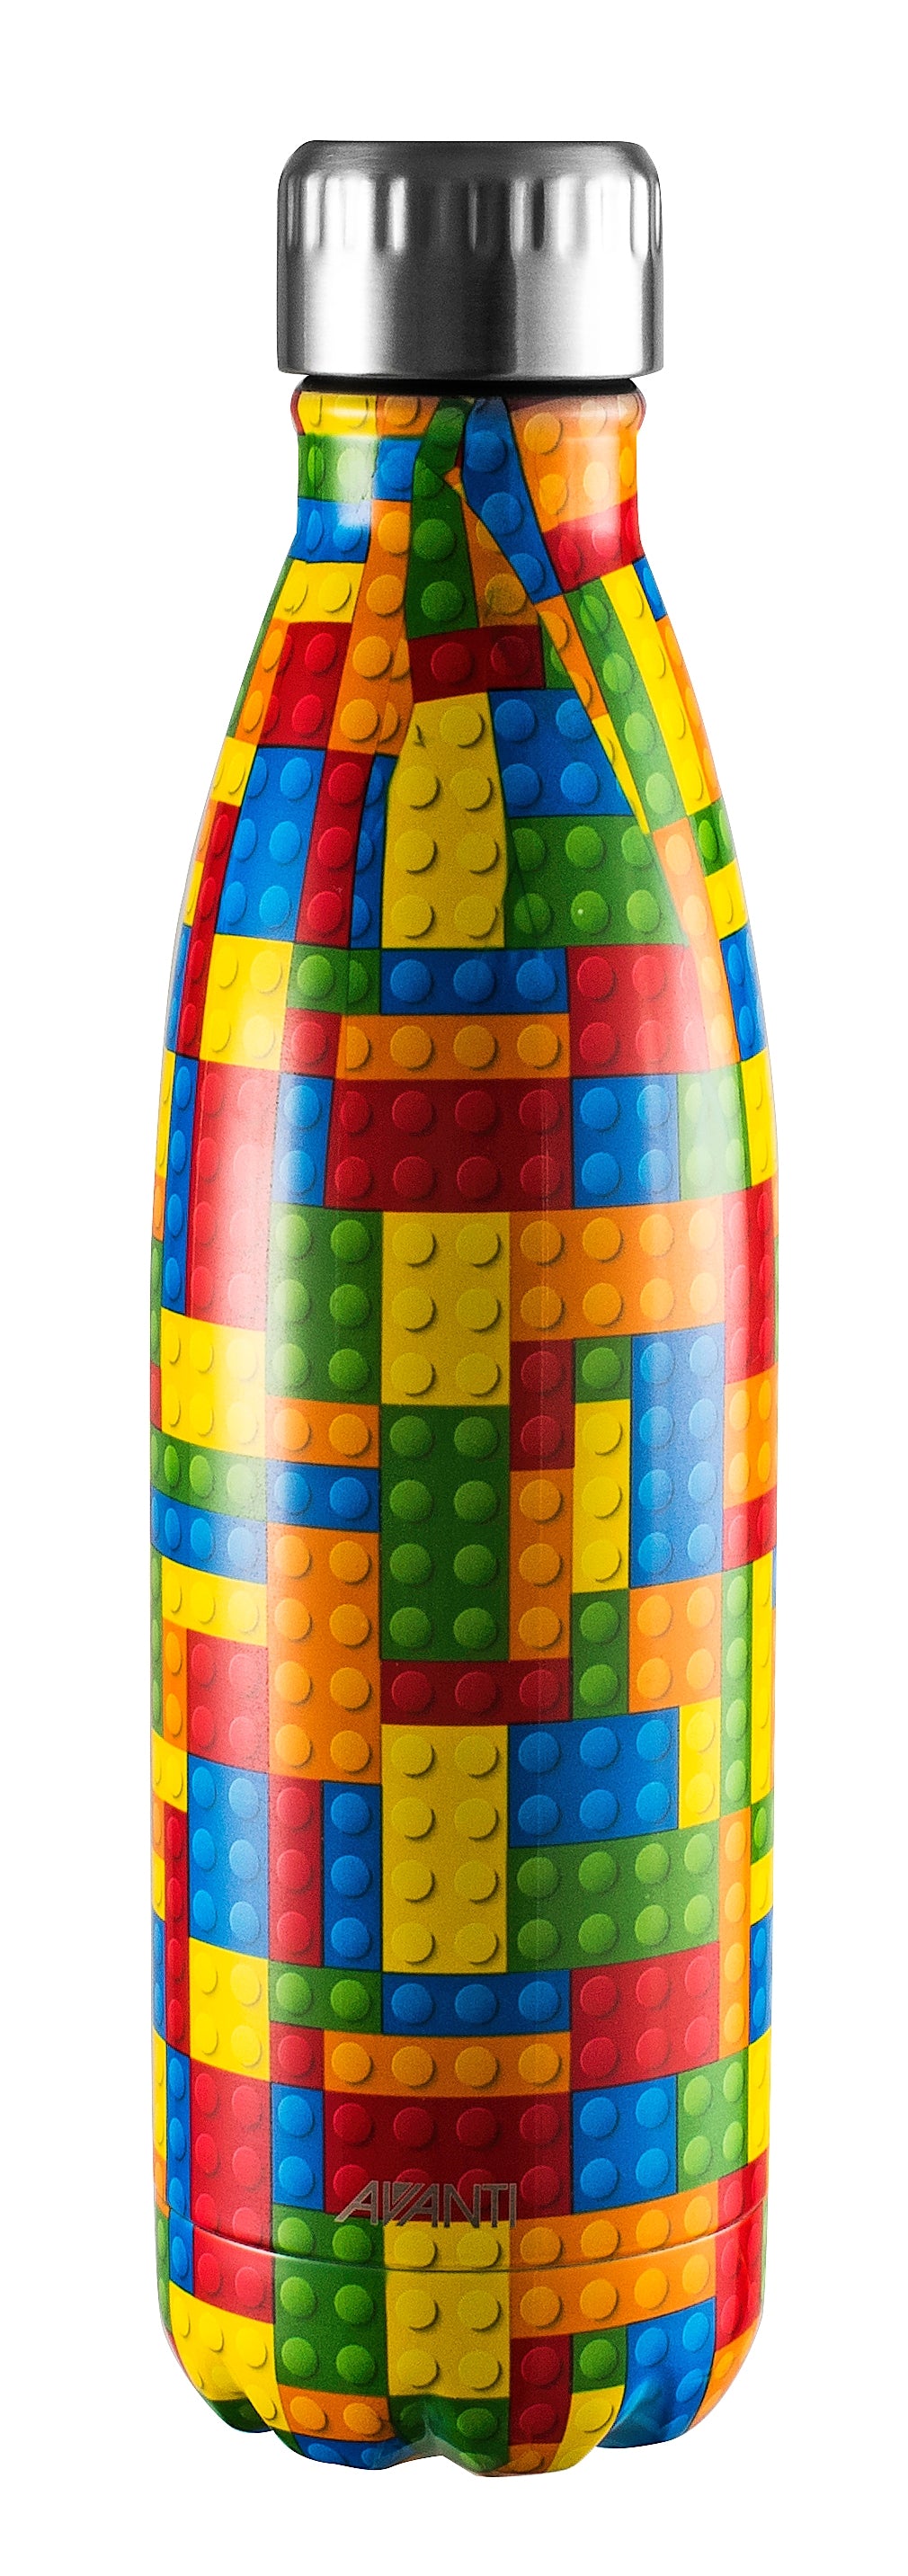 Avanti Fluid Bottle 500ml - Building Bricks